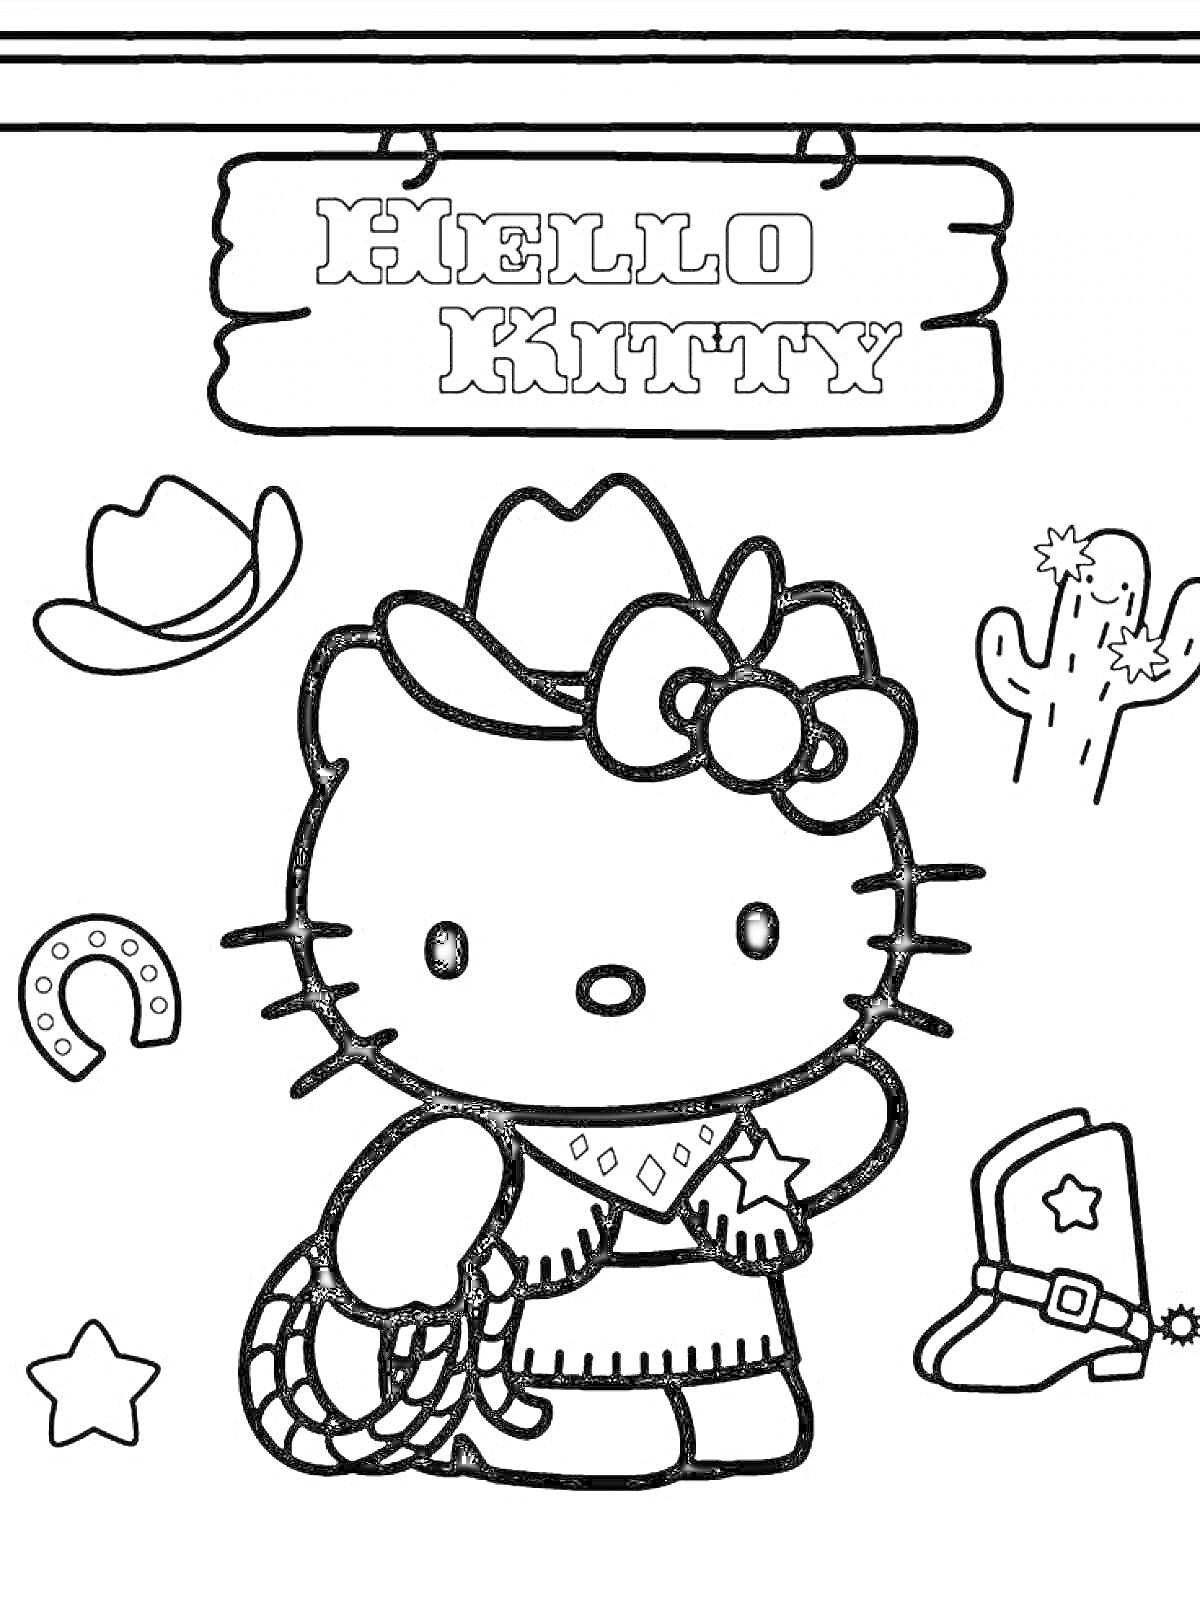 Раскраска Хелло Китти в ковбойской шляпе, платье с платком на шее и звездой на платье, с веревкой в руках, рядом ковбойская шляпа, кактус, подкова, ковбойский ботинок и звезда, на фоне надпись Hello Kitty